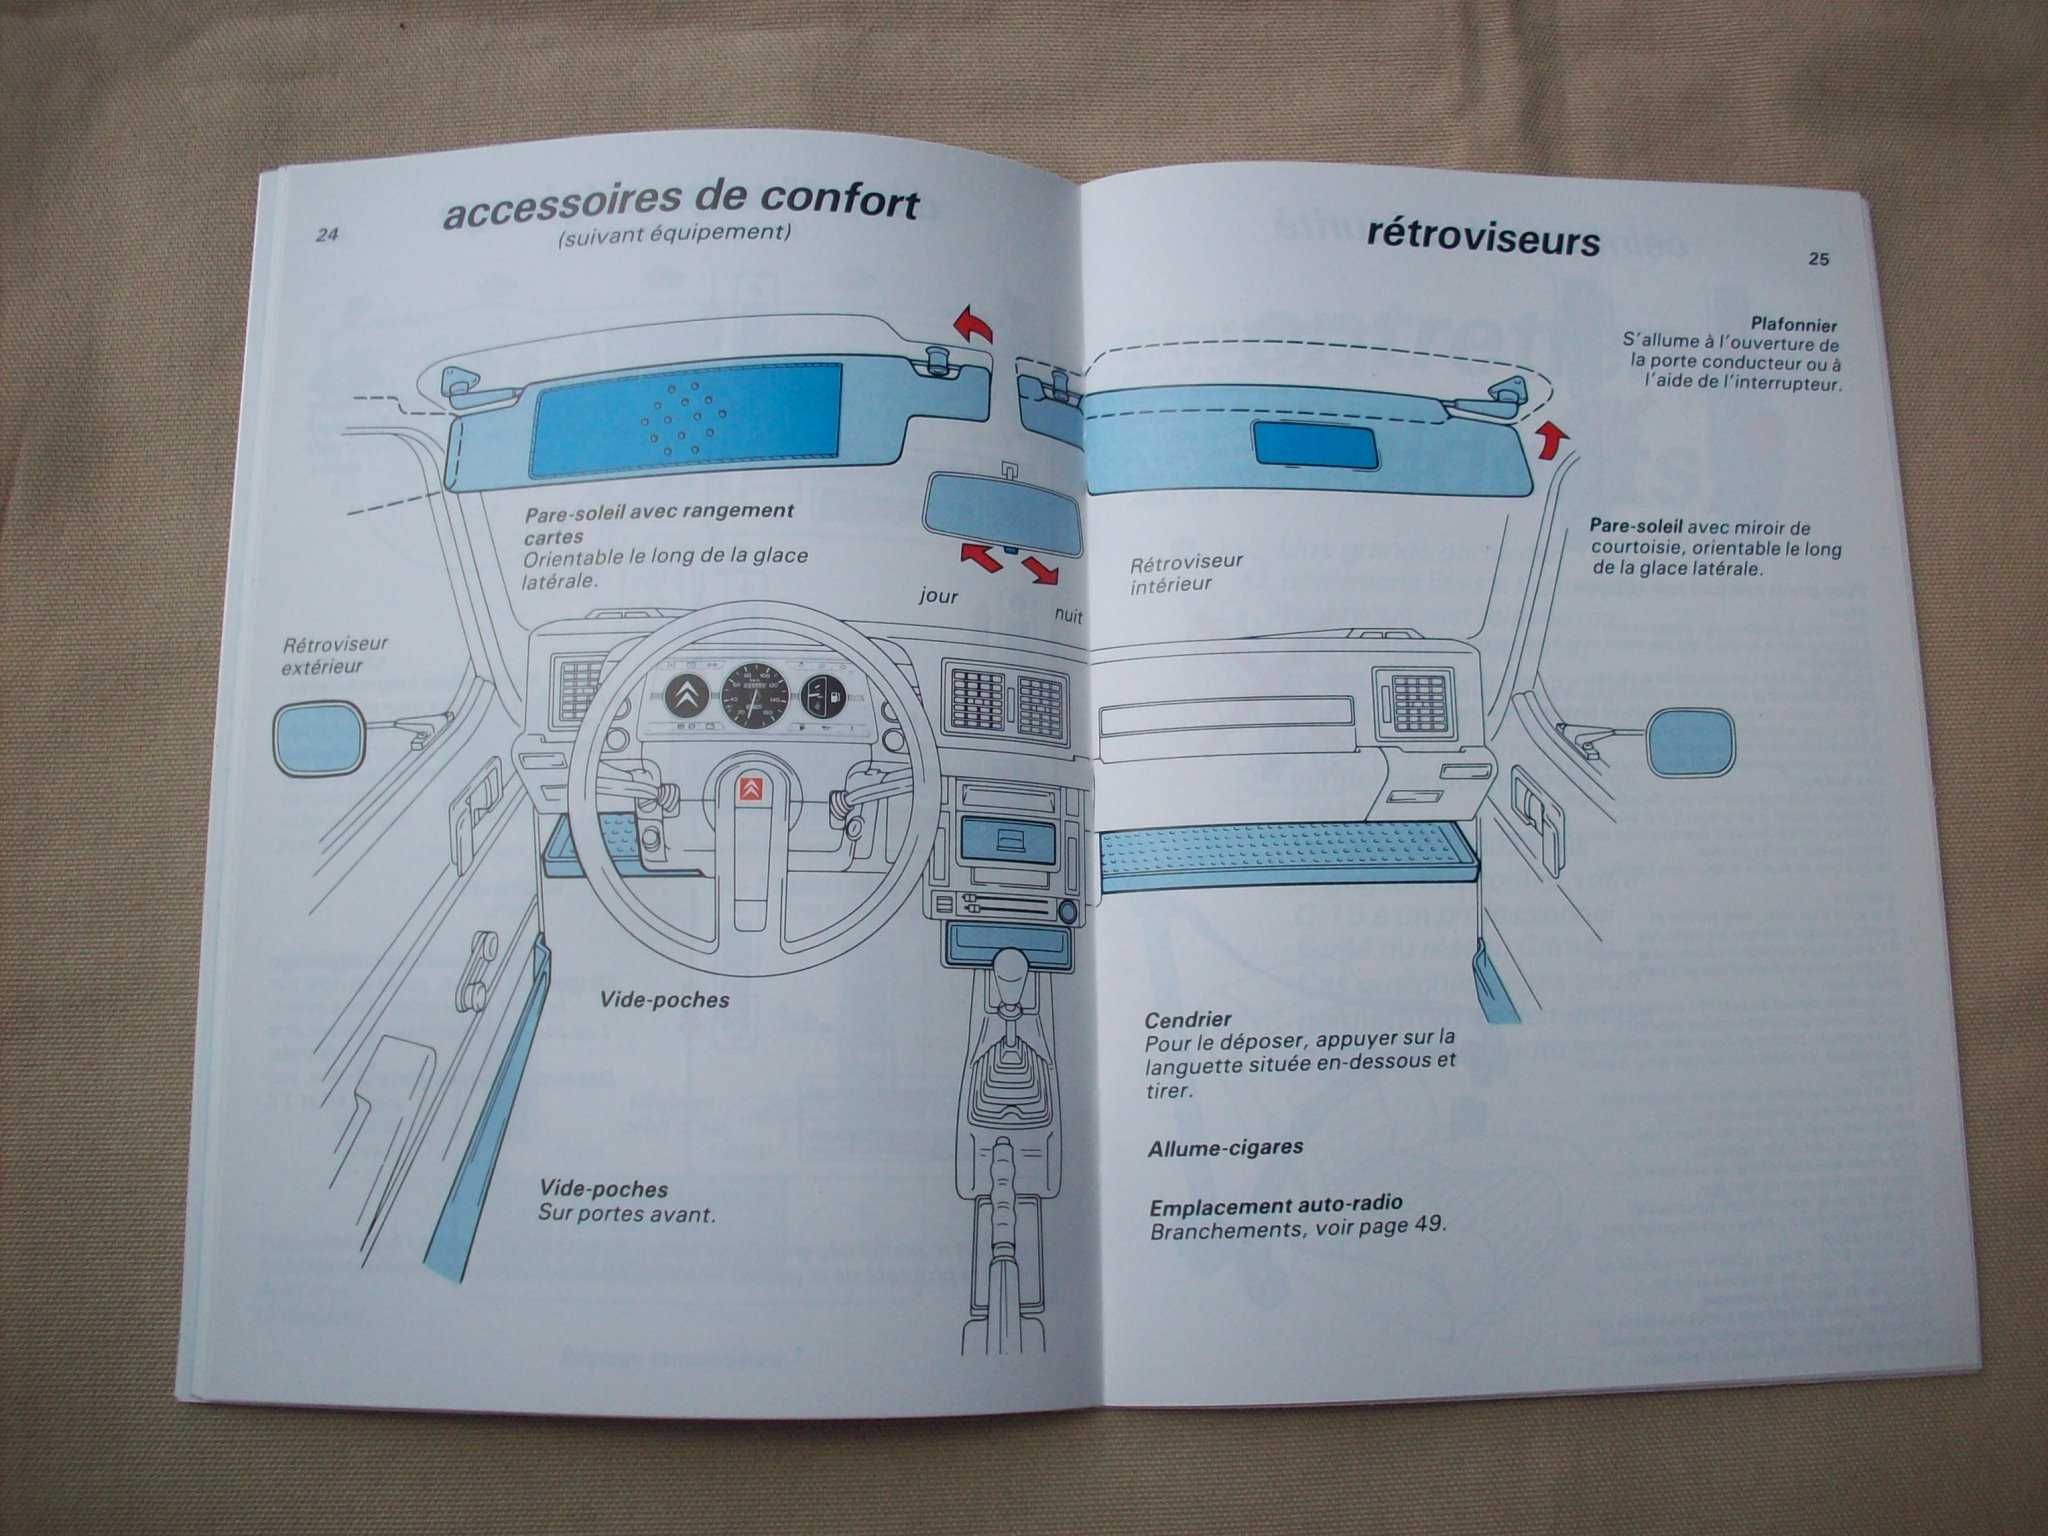 Instrukcja obsługi Citroen C15, stara, w obcym języku.